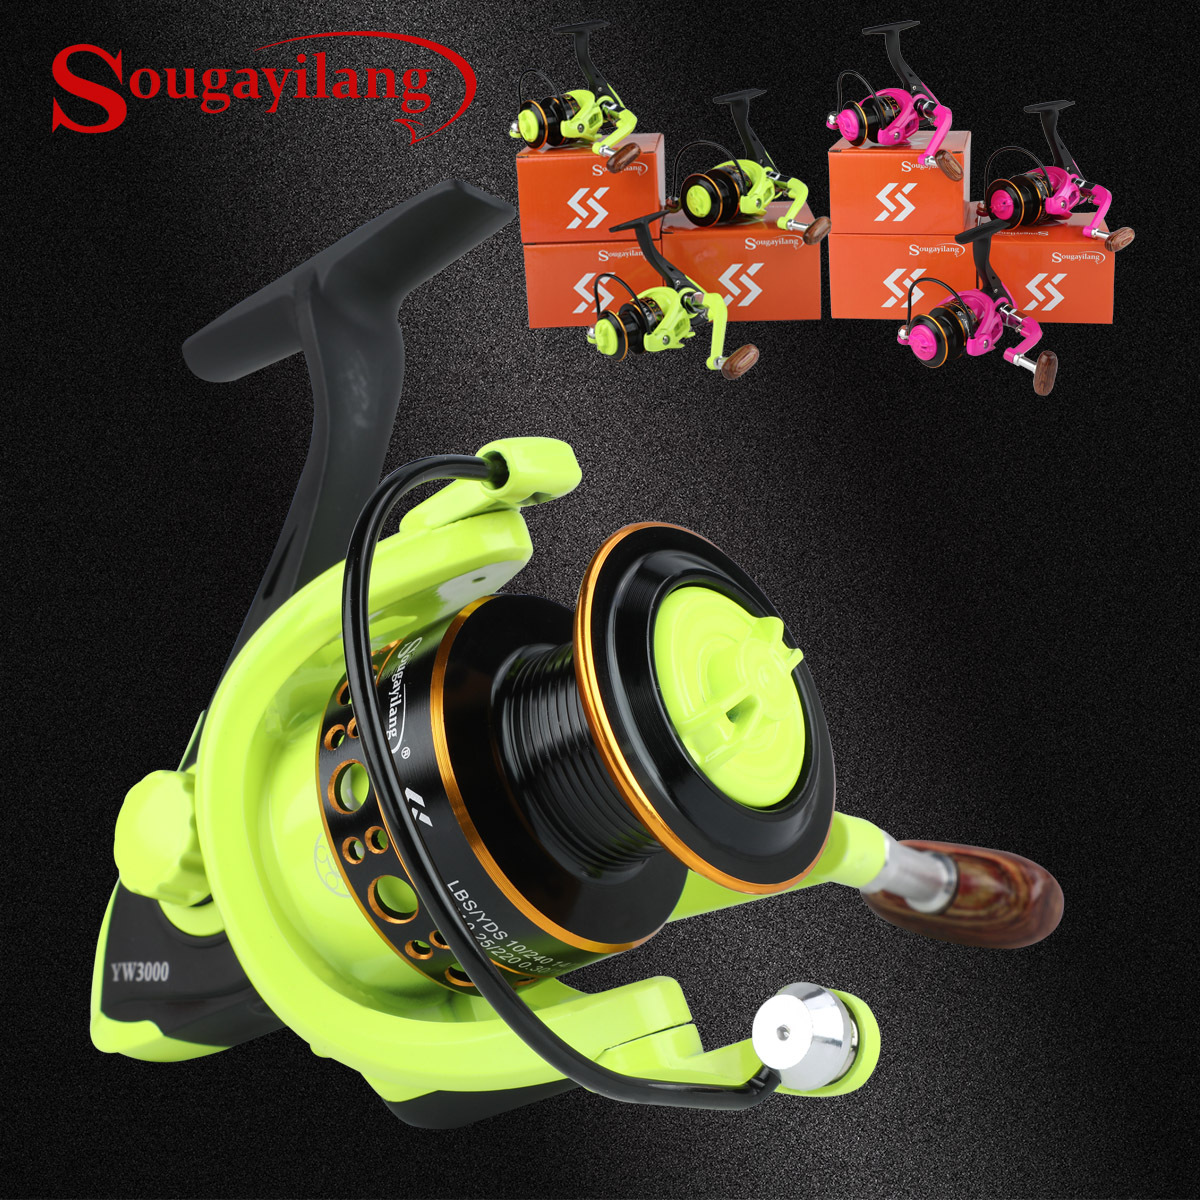 Sougayilang 5.2:1 Gear Ratio Spinning Reel 12+1bb Fishing - Temu